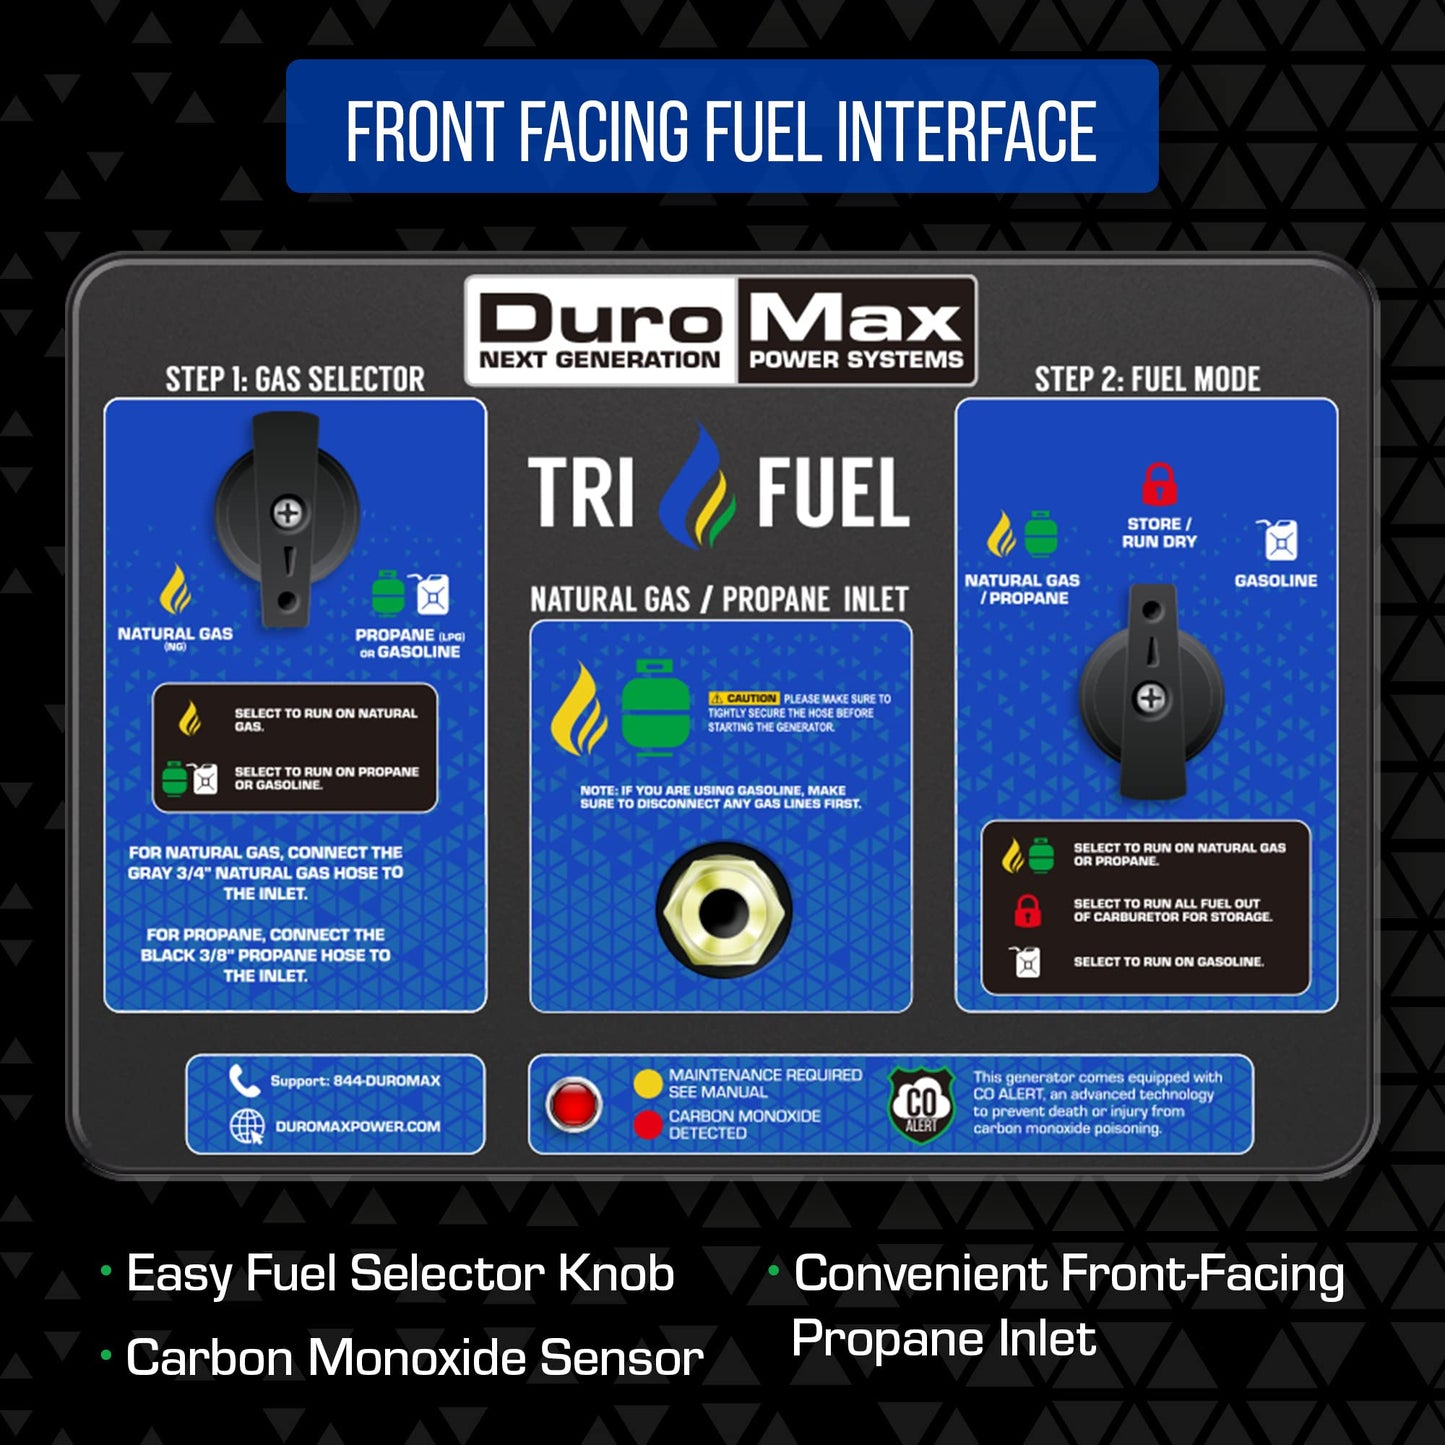 DuroMax XP13000HXT Générateur portable au gaz naturel, propane, tri-carburant, 13 000 watts, 500 cc, avec alerte CO, noir/bleu, tri-carburant, 13 000 watts 